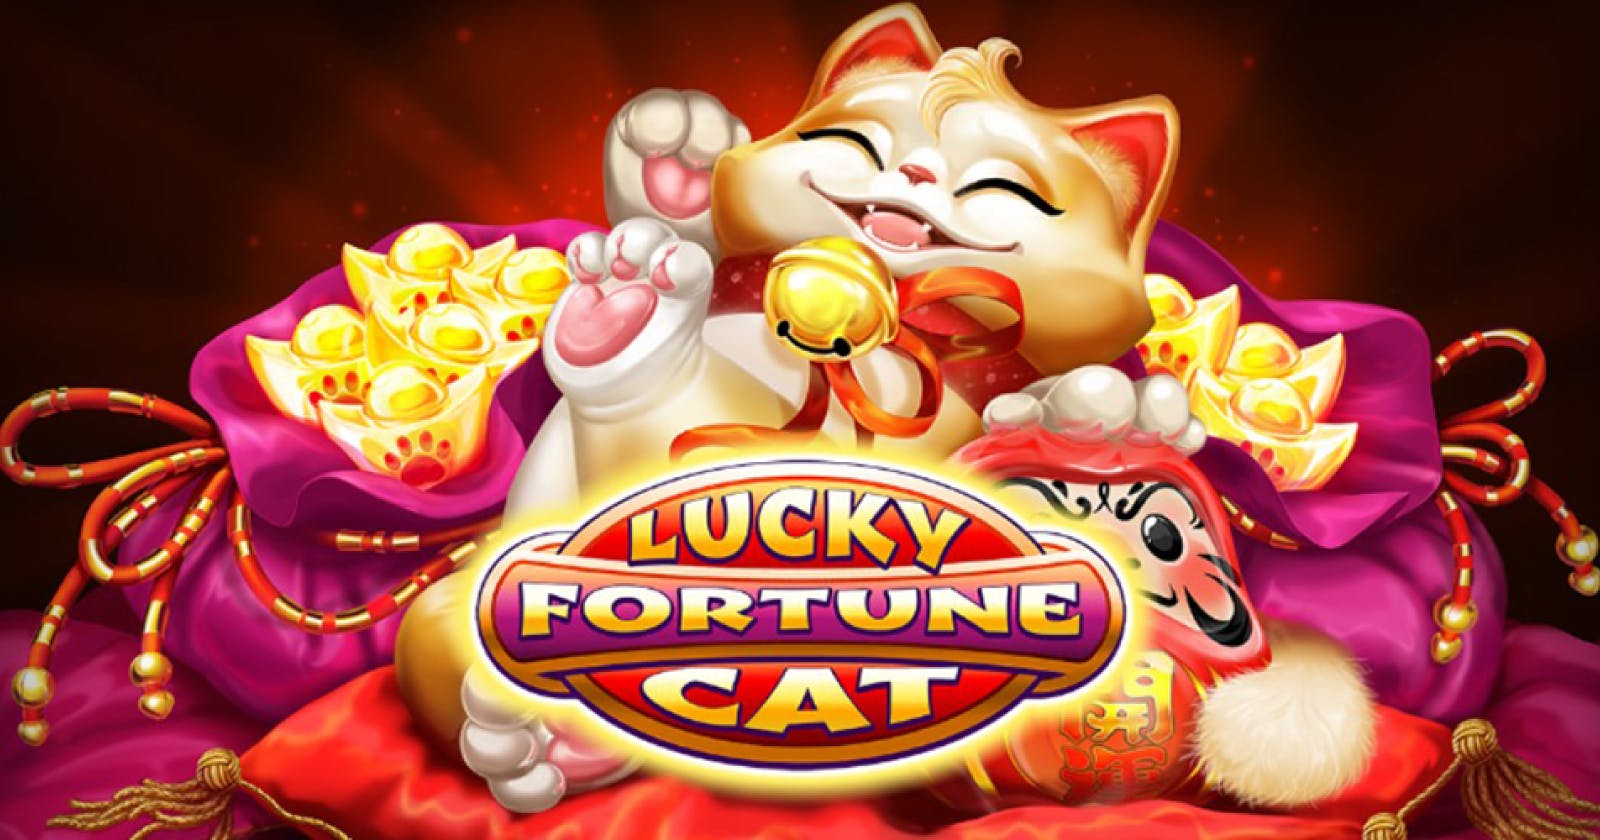 Keberuntungan Terpancar dengan Slot Online Lucky Fortune Cat dari Habanero!